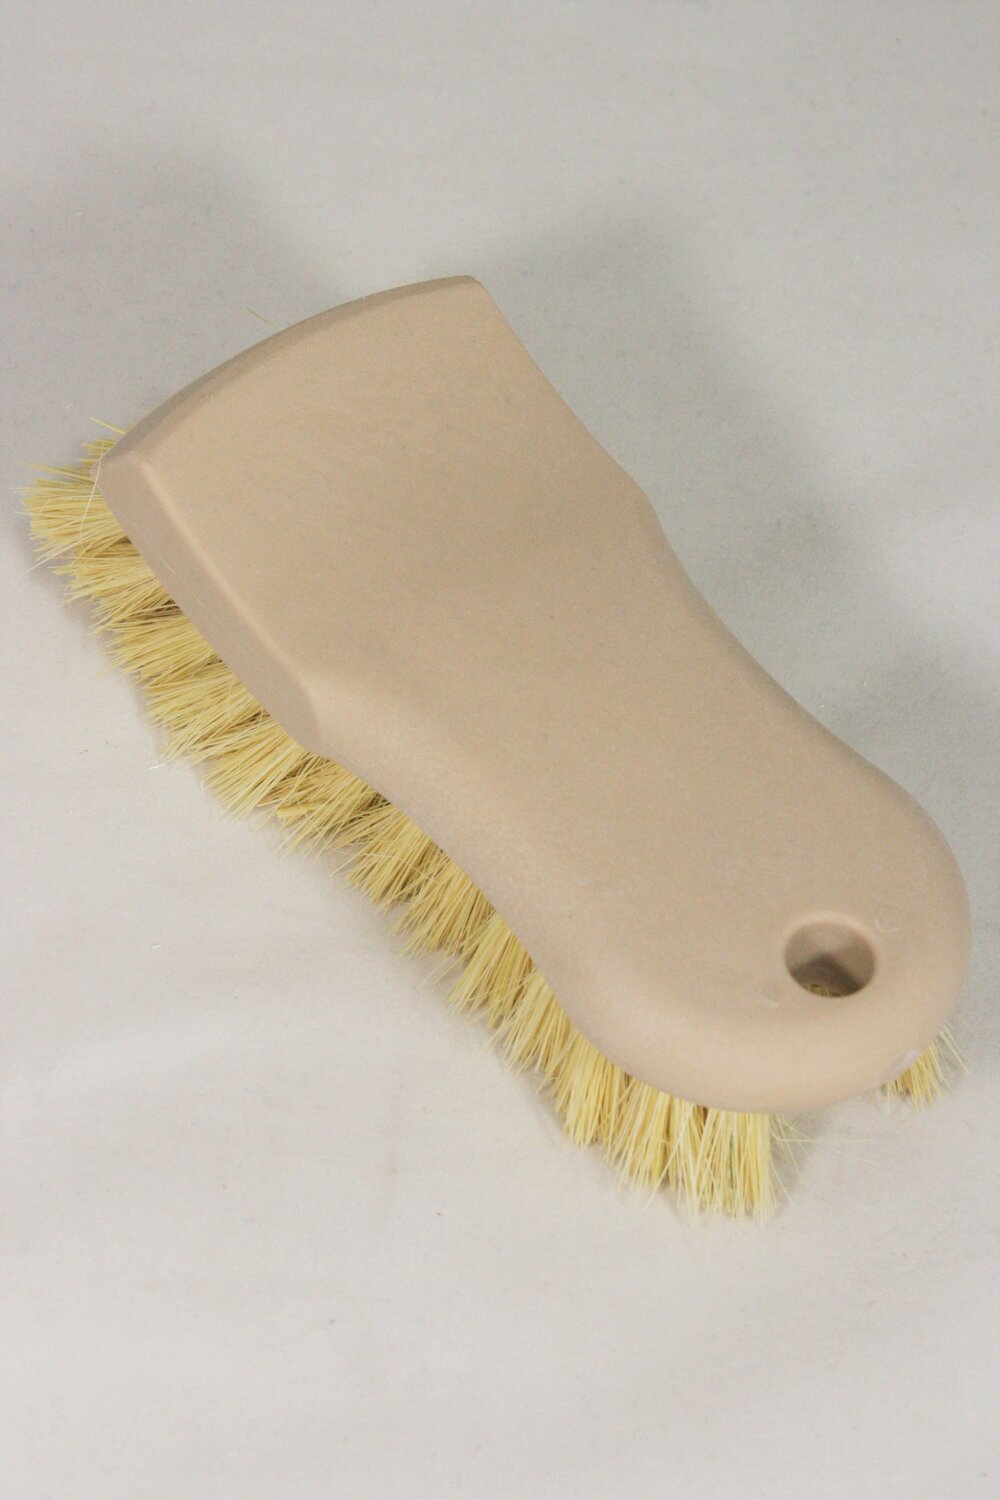 Carpet & Upholstery Brush 6